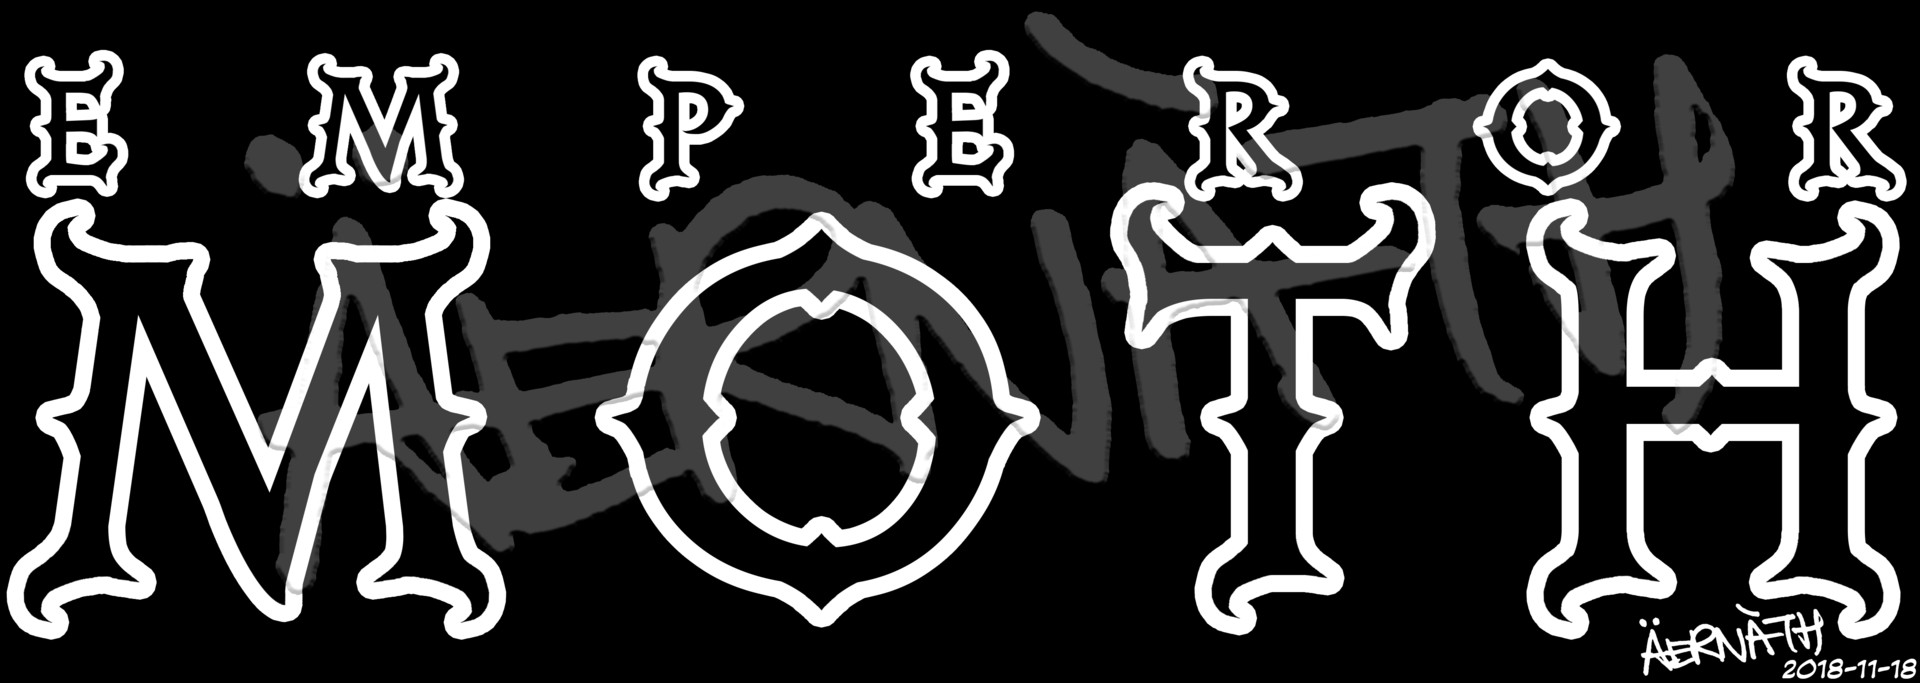 emperor band logo